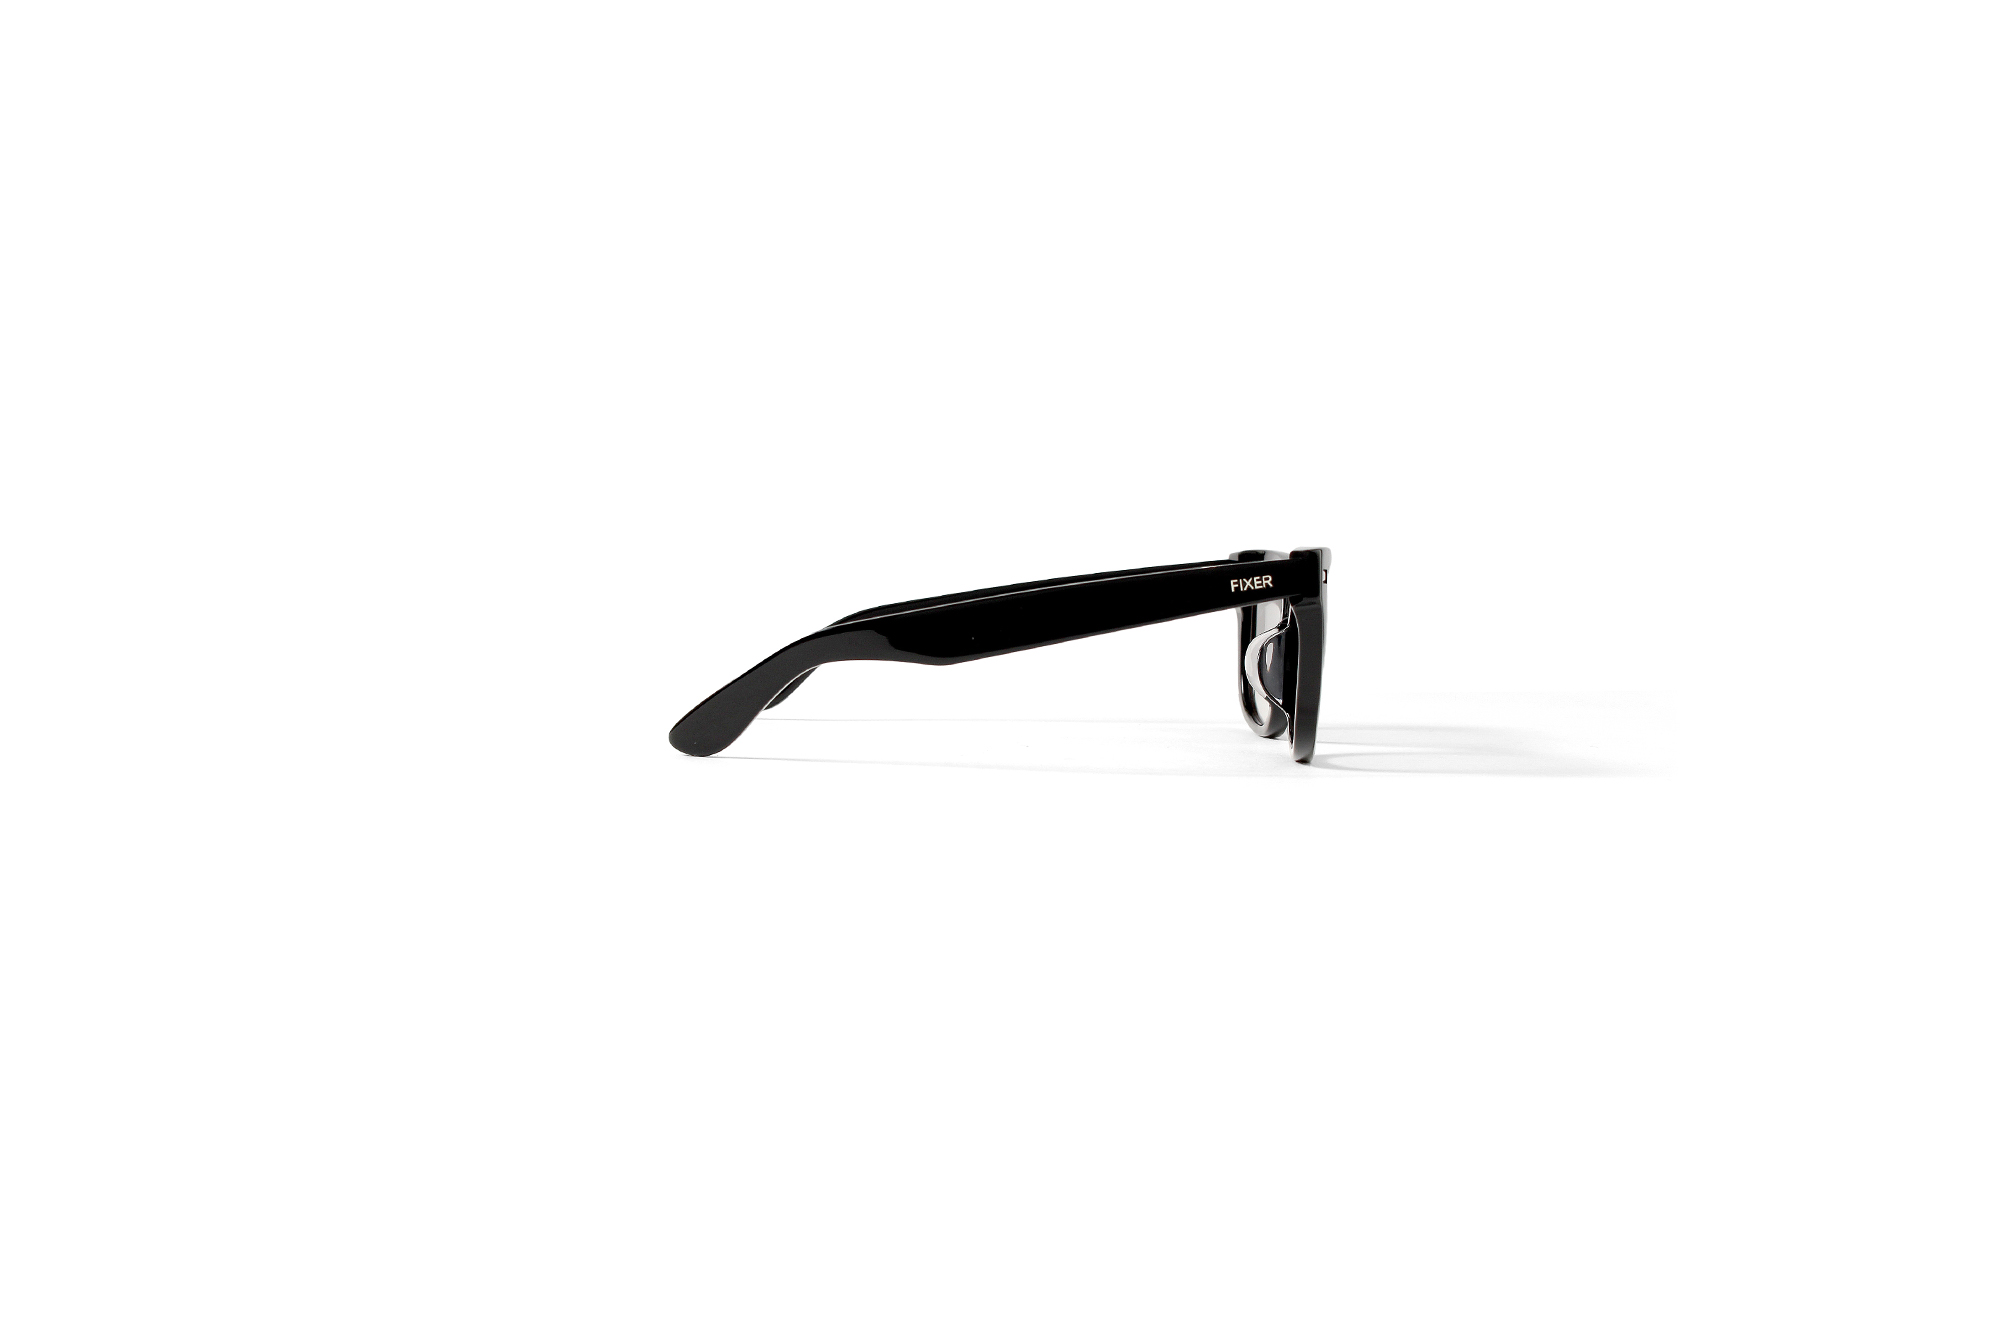 FIXER(フィクサー) BLACK PANTHER(ブラックパンサー) 925 STERLING SILVER サングラス BLACK × BLACK SMOKE (ブラック×ブラックスモーク),BLACK × LIGHT GRAY (ブラック×ライトグレー)【ご予約開始】愛知 名古屋 Alto e Diritto アルトエデリット 眼鏡 グラサン 925スターリングシルバー スペシャルモデル sunglasses